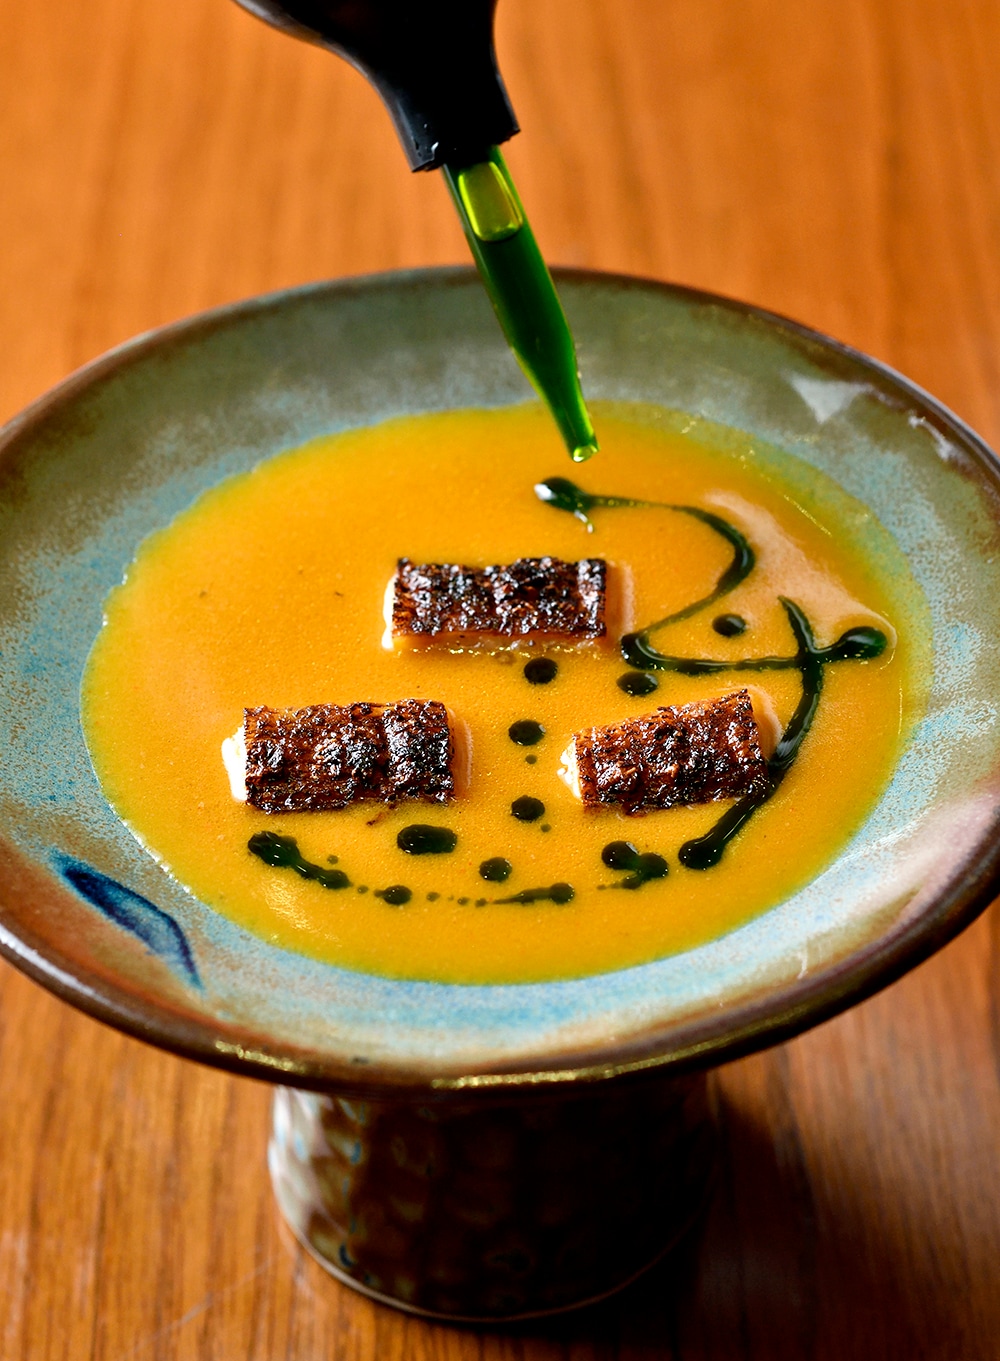 ヒラメのエンガワのグリル。スダードというペルーの黄色い唐辛子を使った煮魚料理のダシをイメージしたソース。